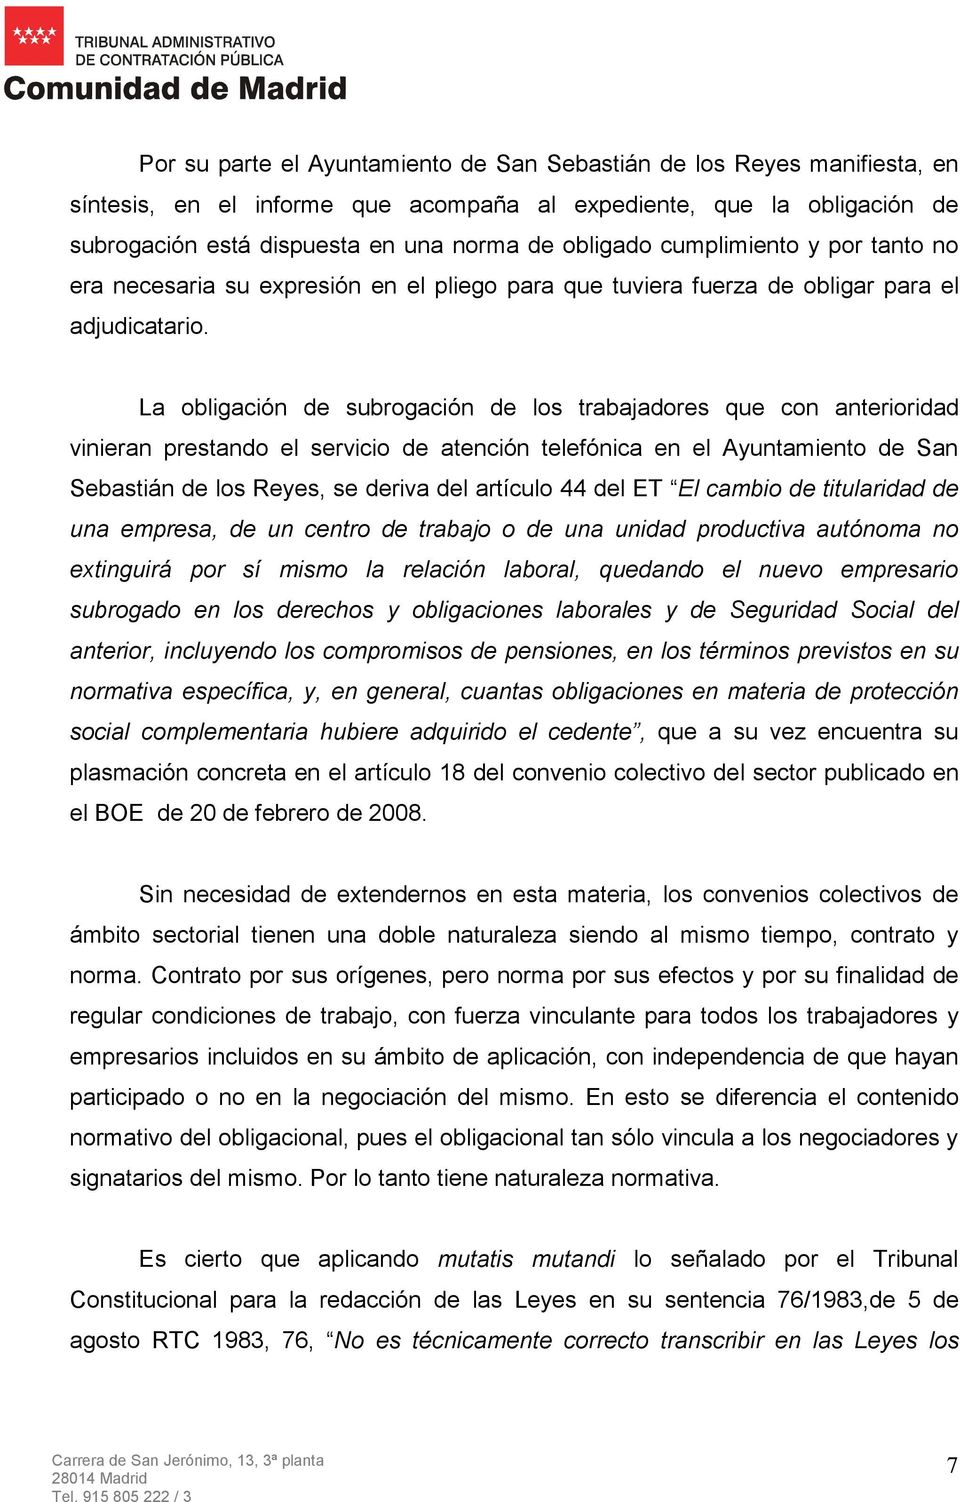 La obligación de subrogación de los trabajadores que con anterioridad vinieran prestando el servicio de atención telefónica en el Ayuntamiento de San Sebastián de los Reyes, se deriva del artículo 44